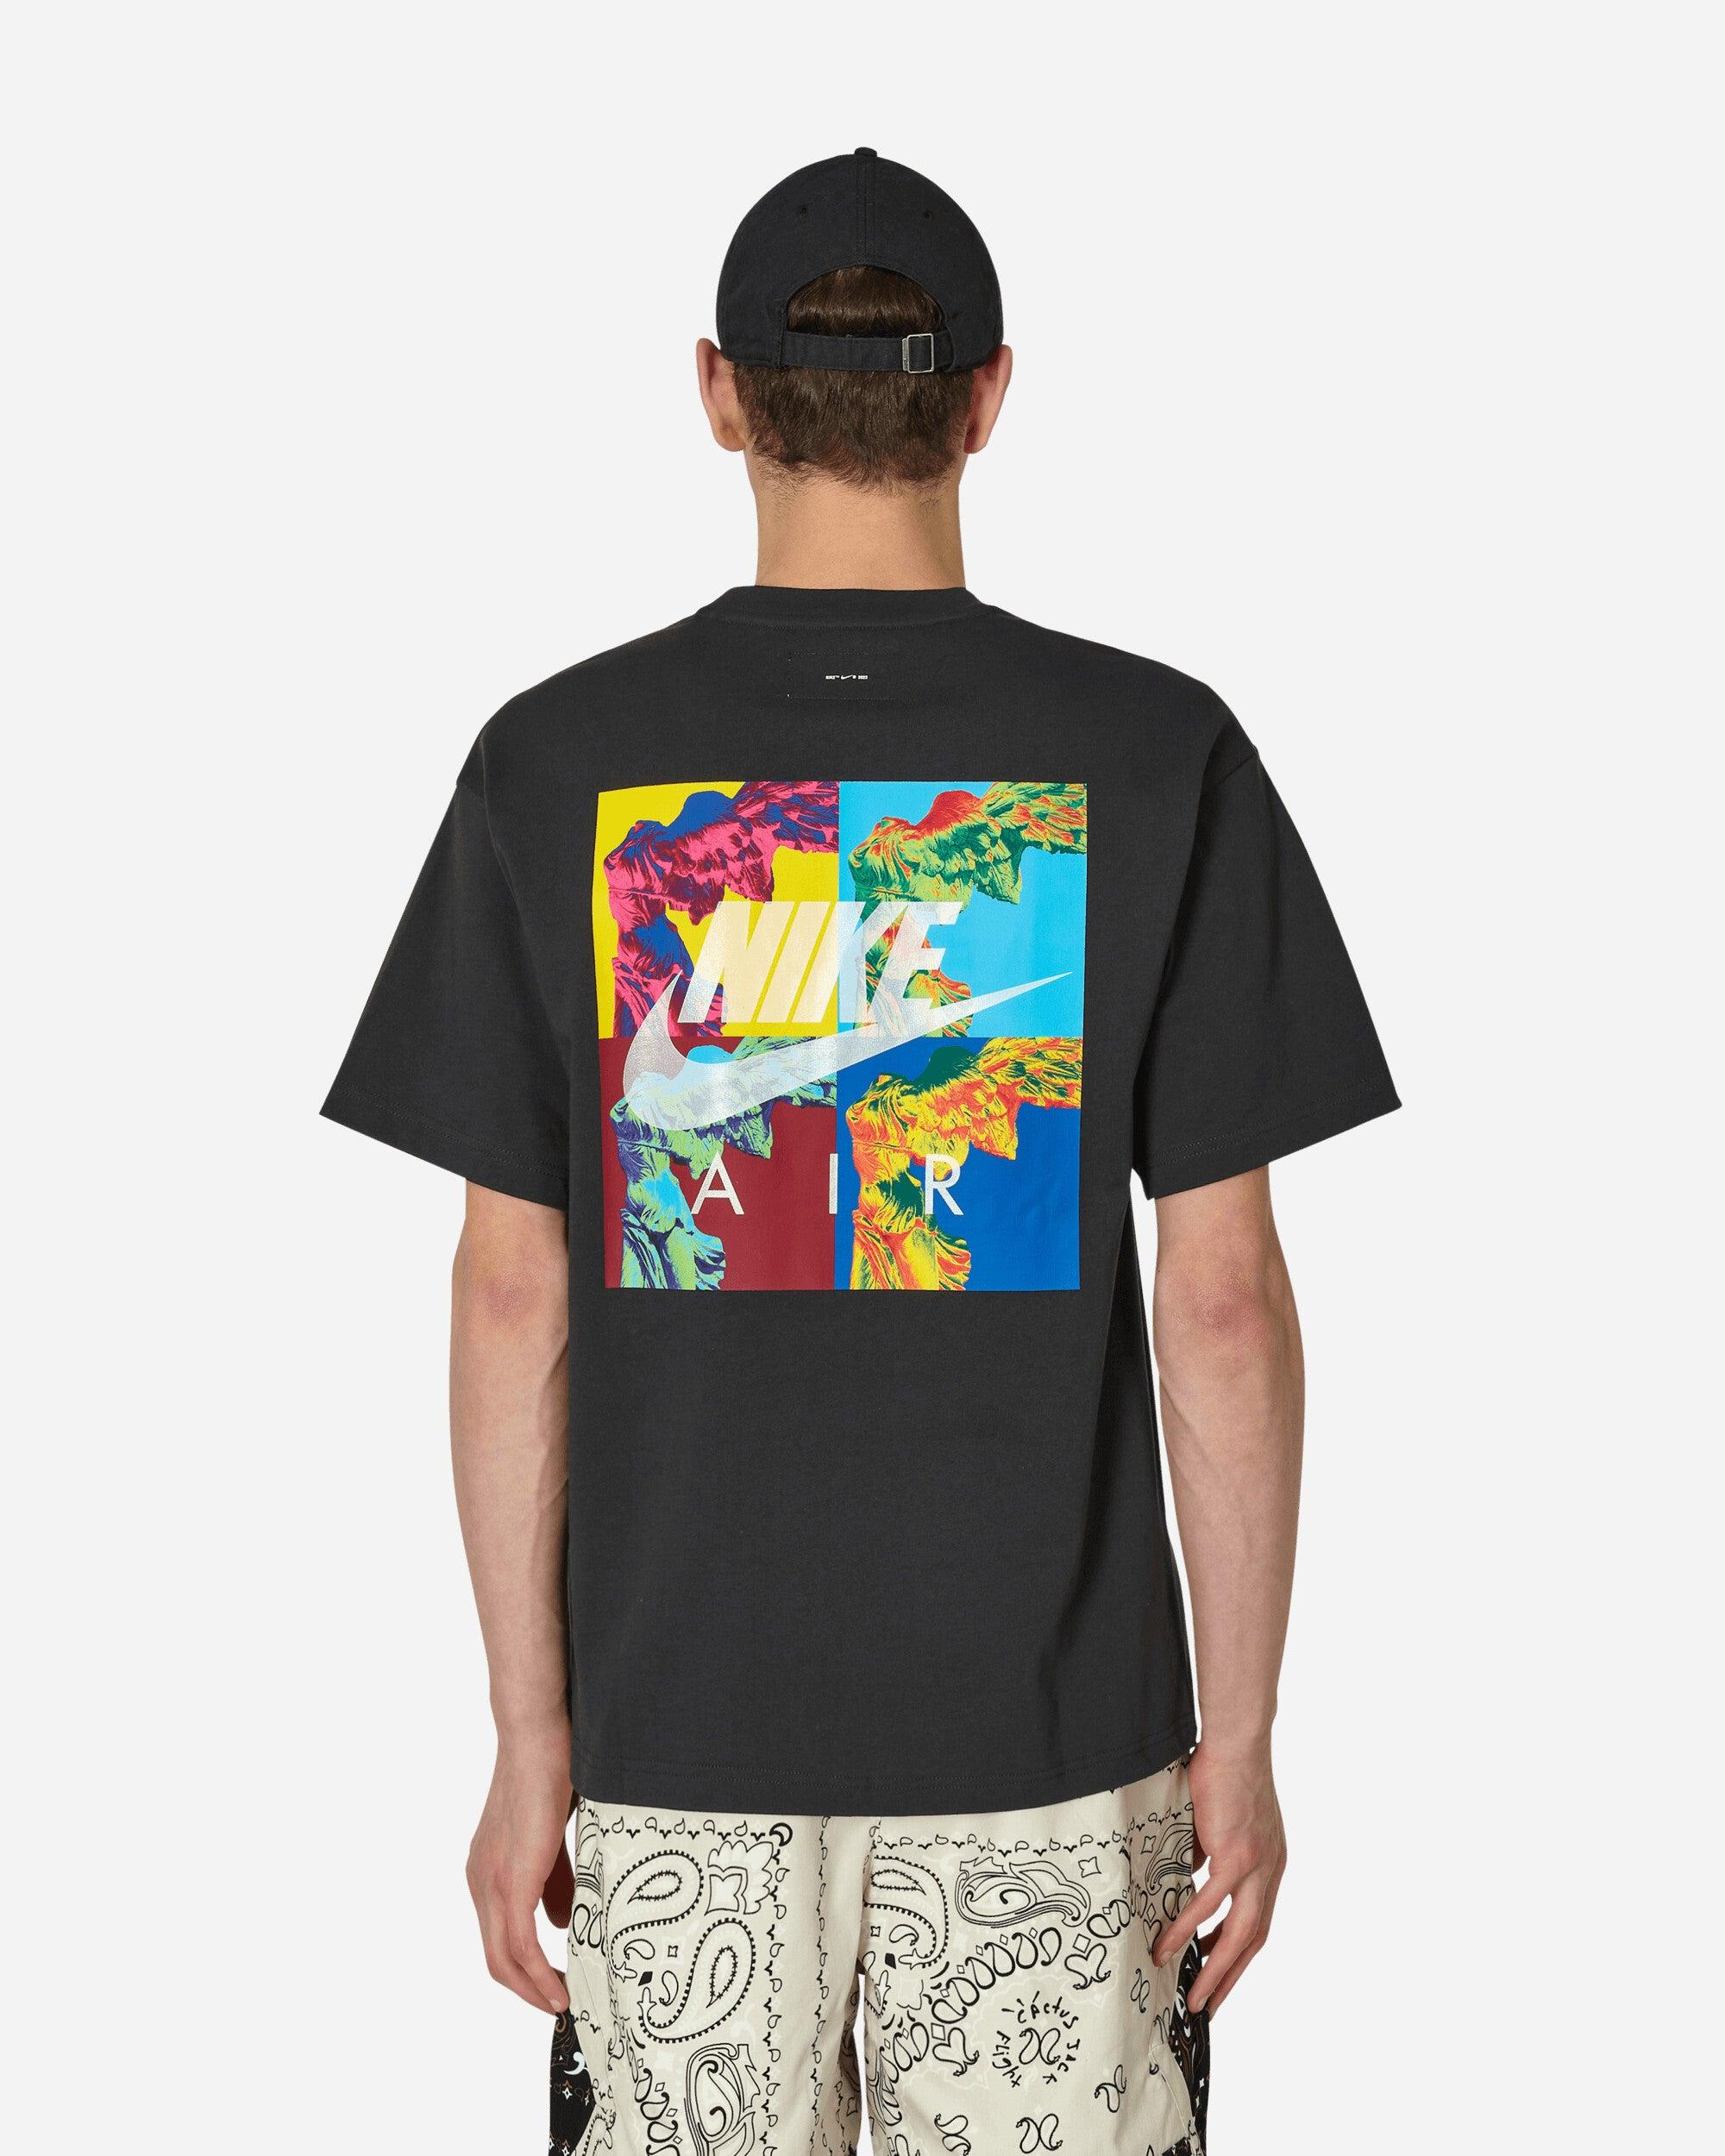 Nike Air Goddess T-Shirt